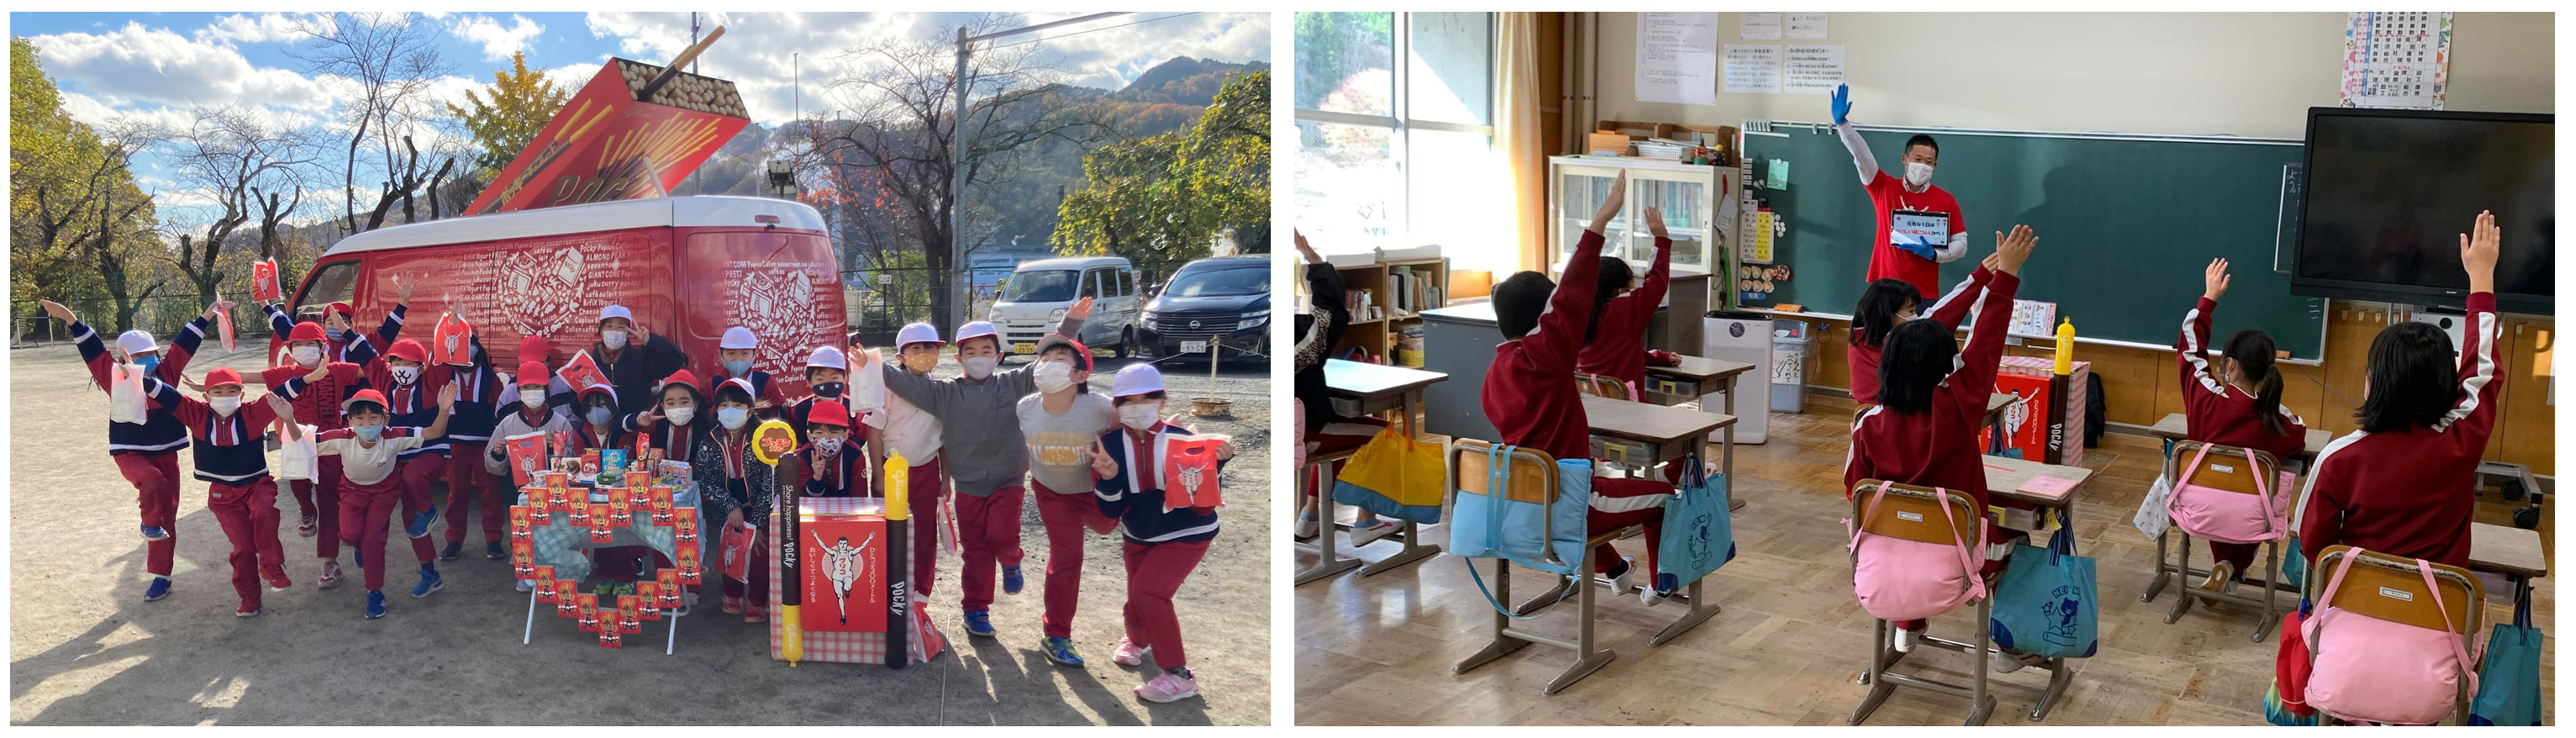 釜石市を訪れたグリコワゴンと、朝食欠食について学ぶ子ども達の写真